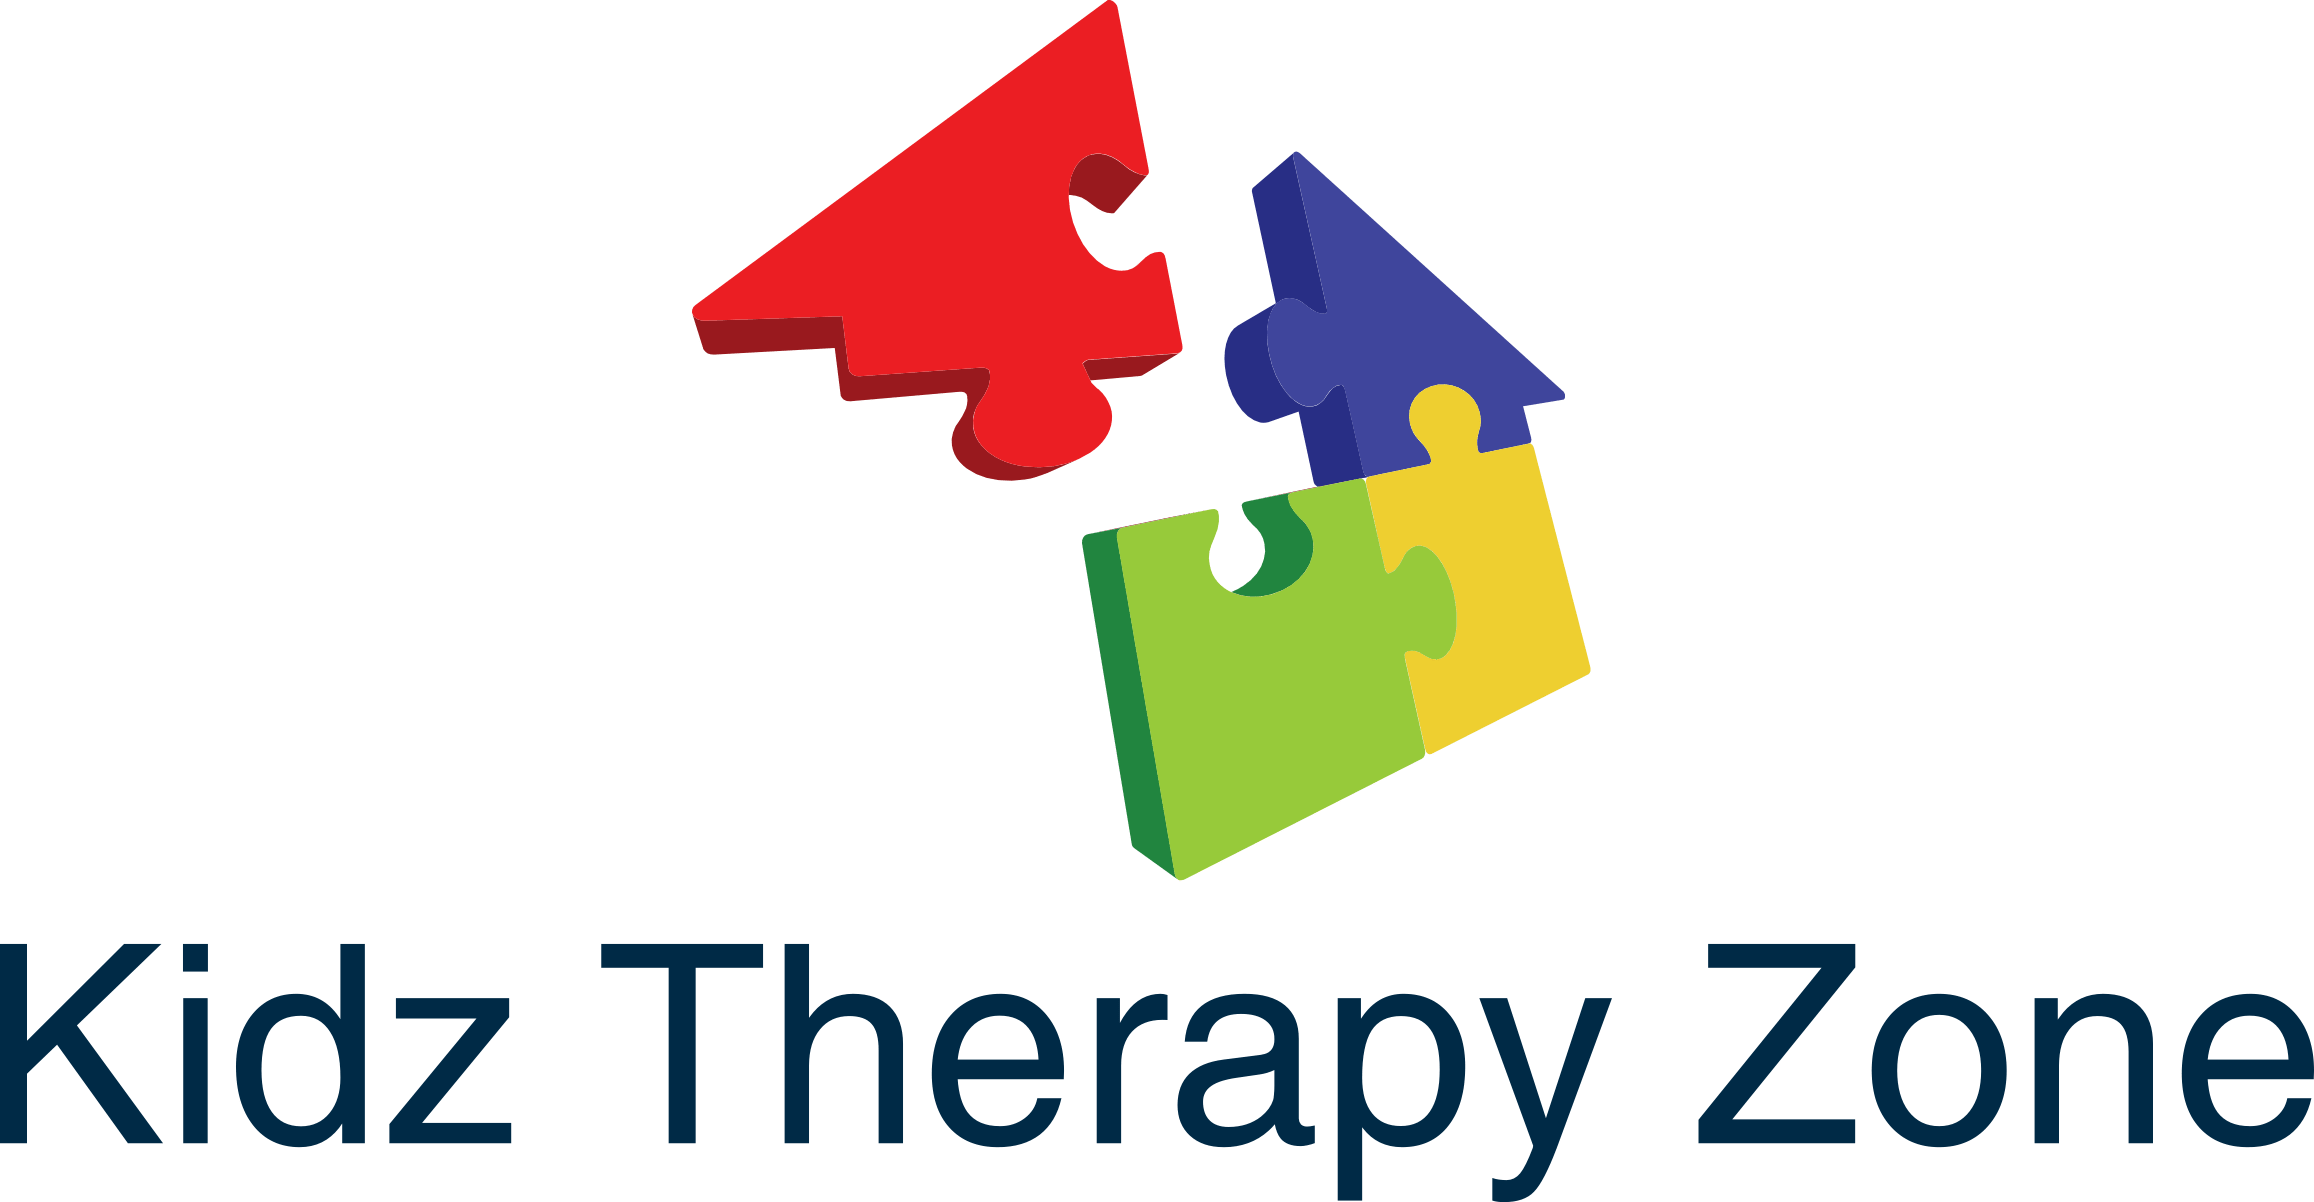 Kidz Therapy Zone